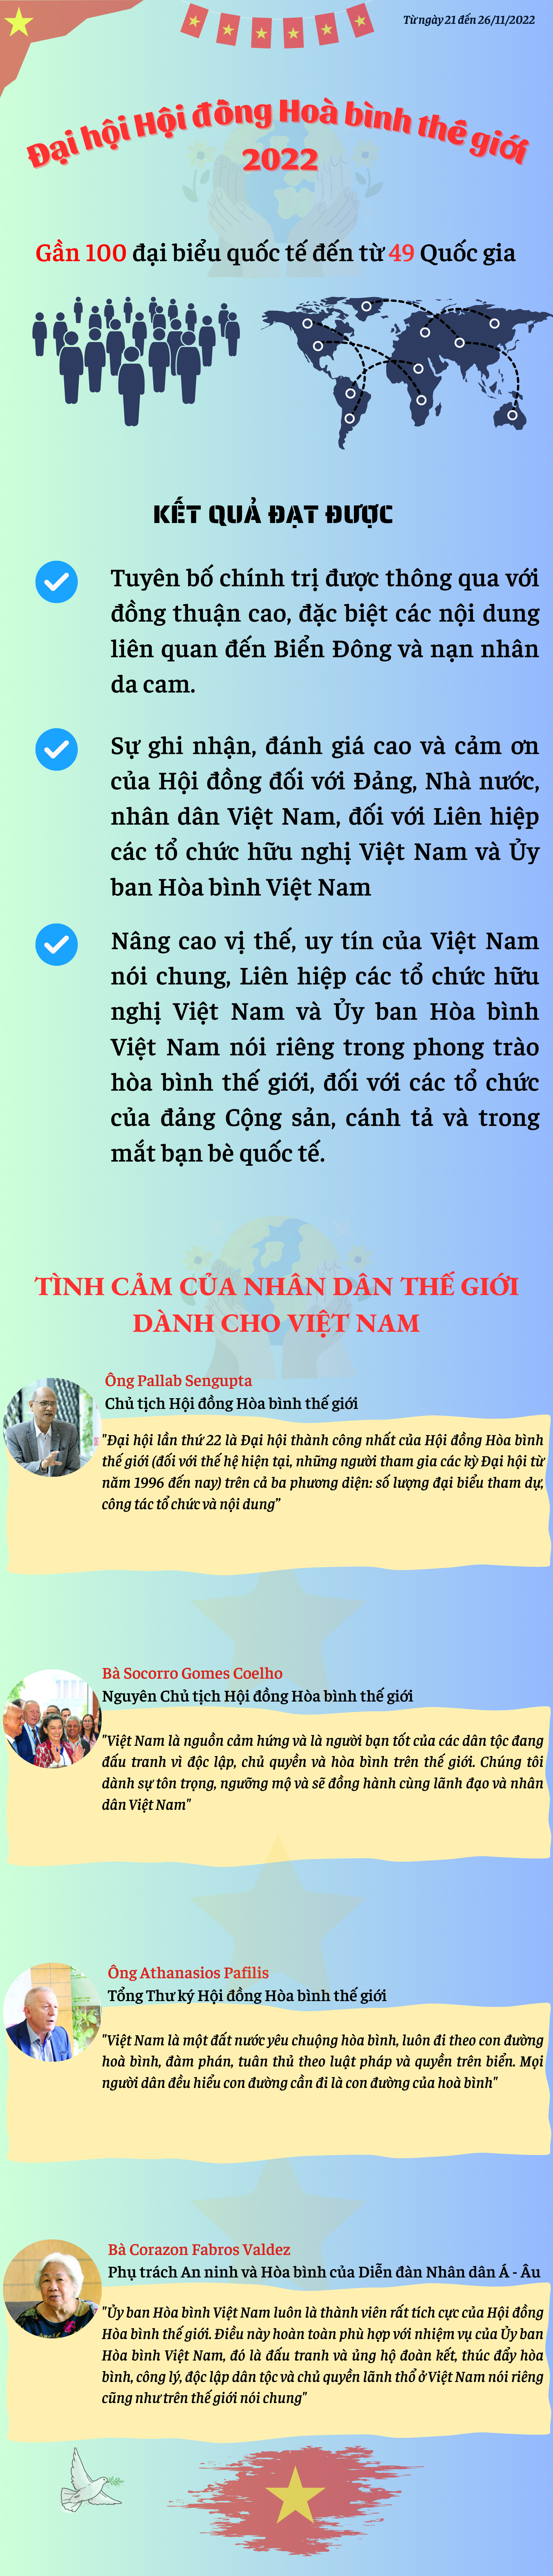 Kỳ 4: Tình cảm của bạn bè quốc tế dành cho Việt Nam